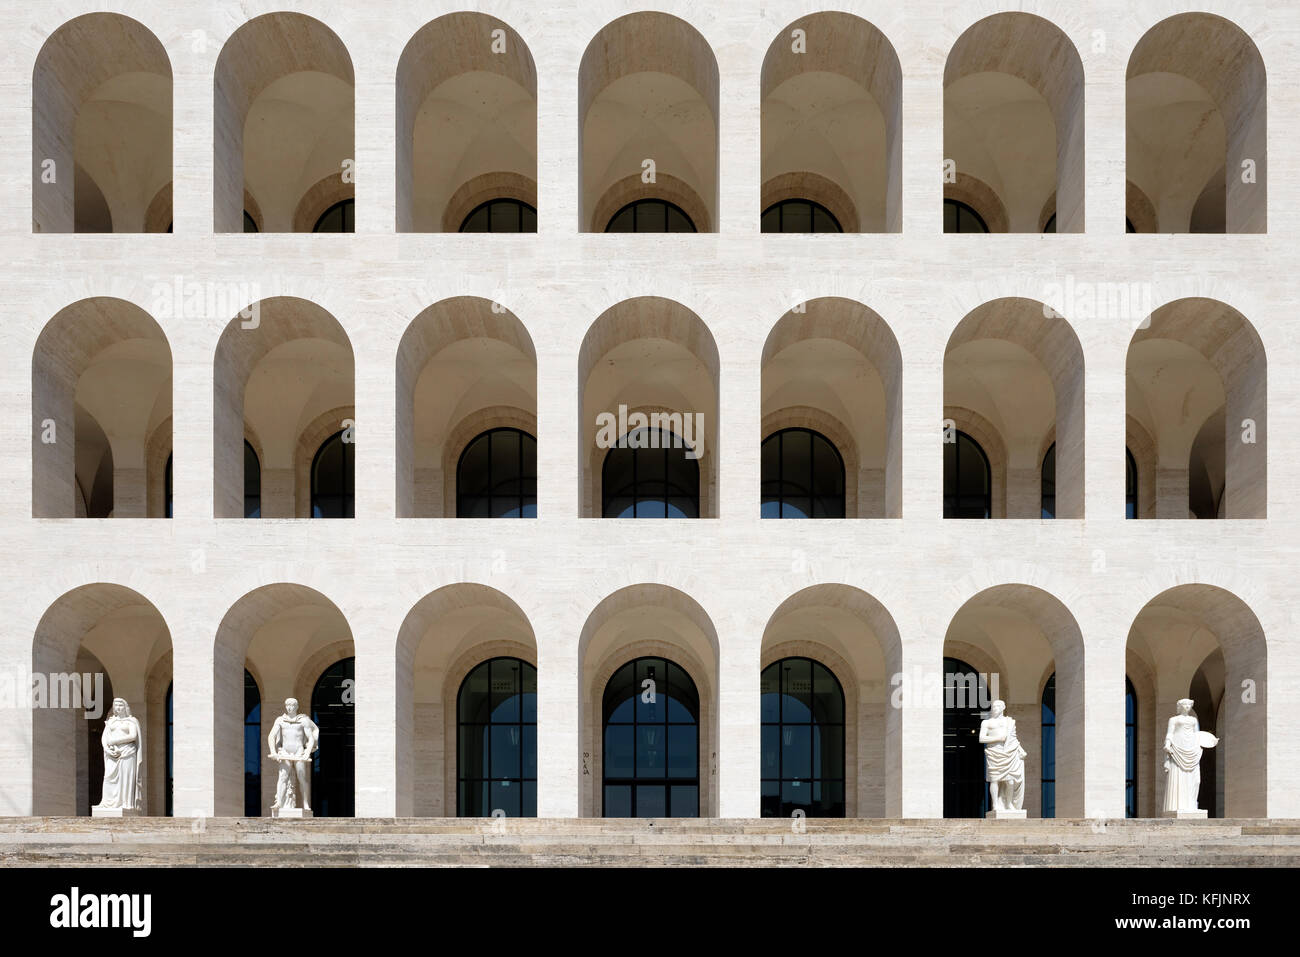 The Palazzo della Civilta Italiana, known as the white marble square ...